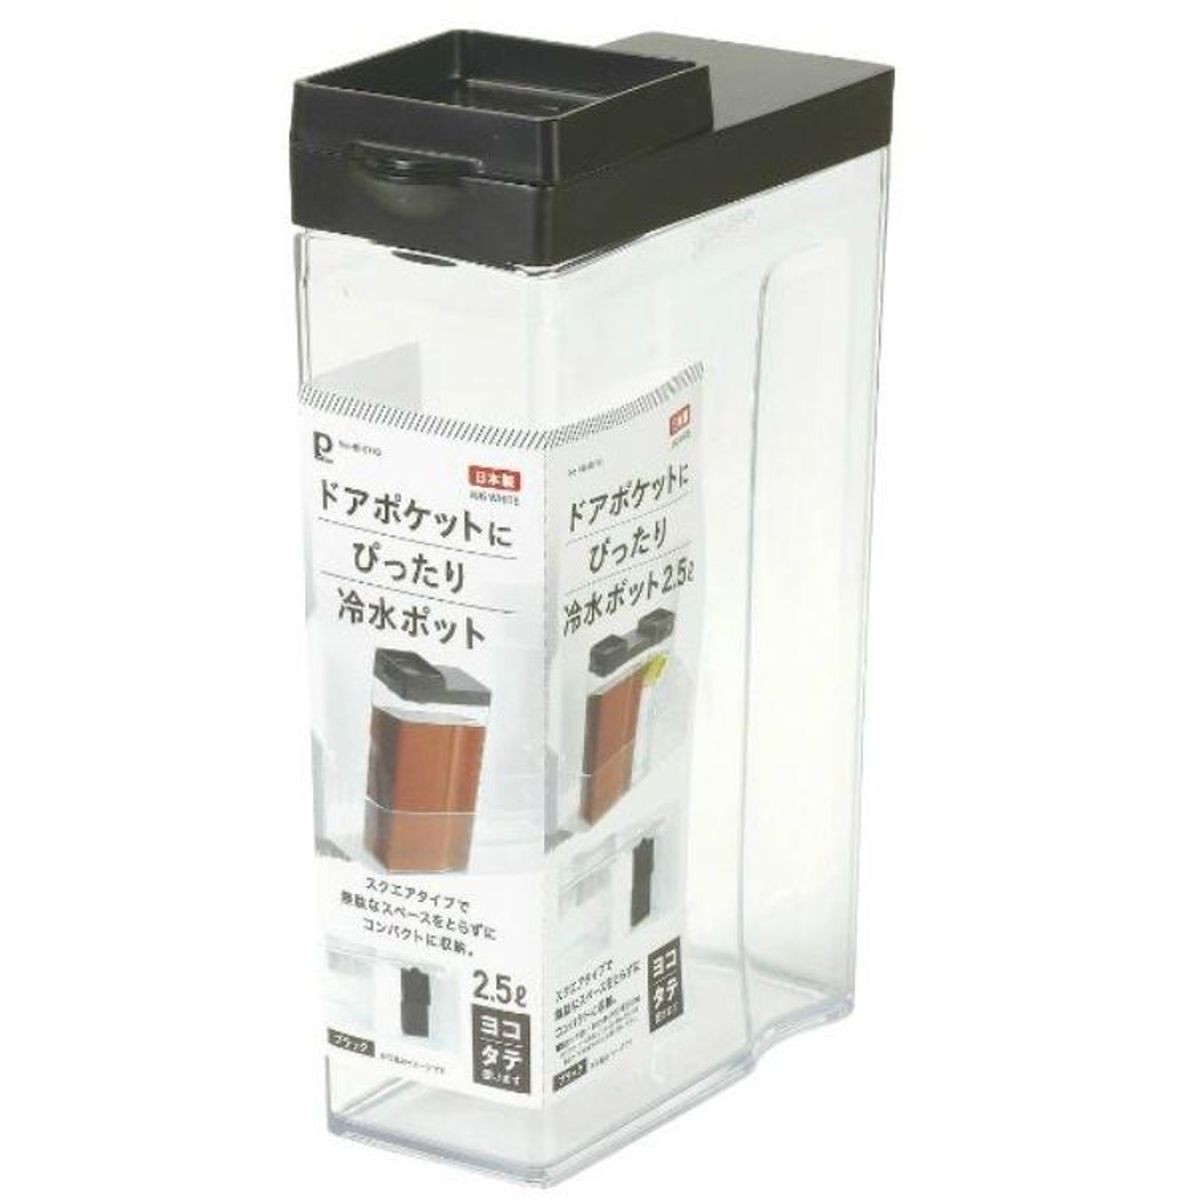 冷水ポット 冷水筒 ピッチャー 2.5L タテヨコ お茶 麦茶 日本製 ブラック ドアポケットにぴったり